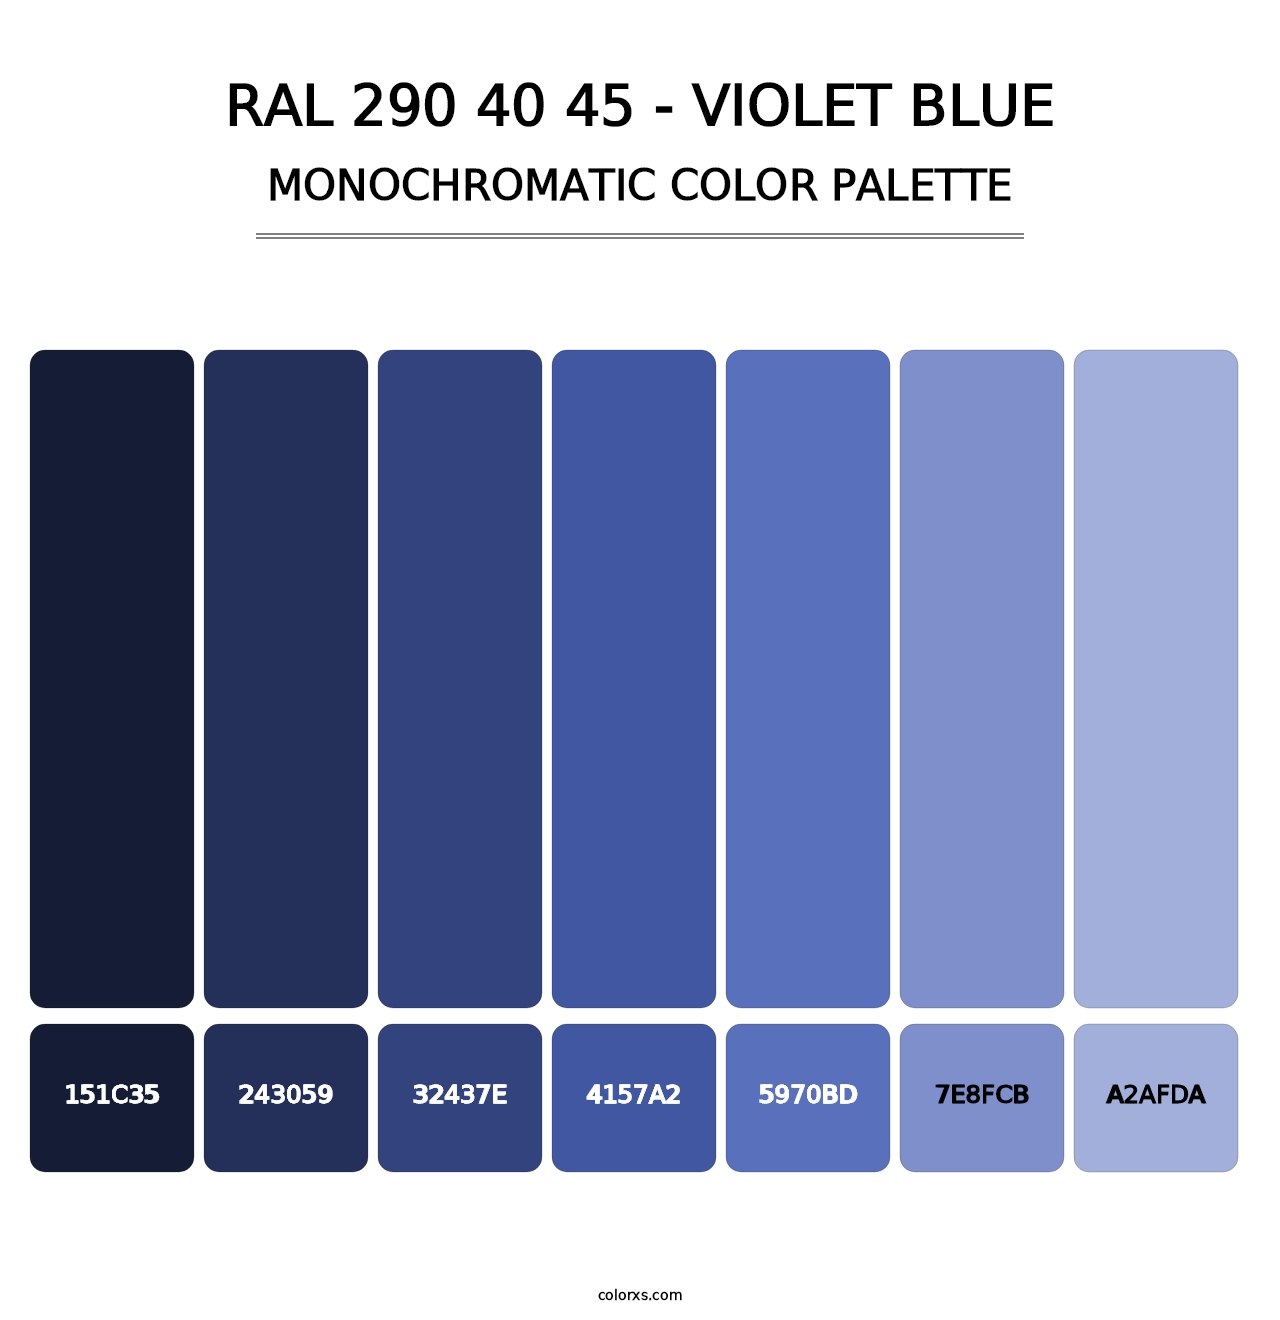 RAL 290 40 45 - Violet Blue - Monochromatic Color Palette